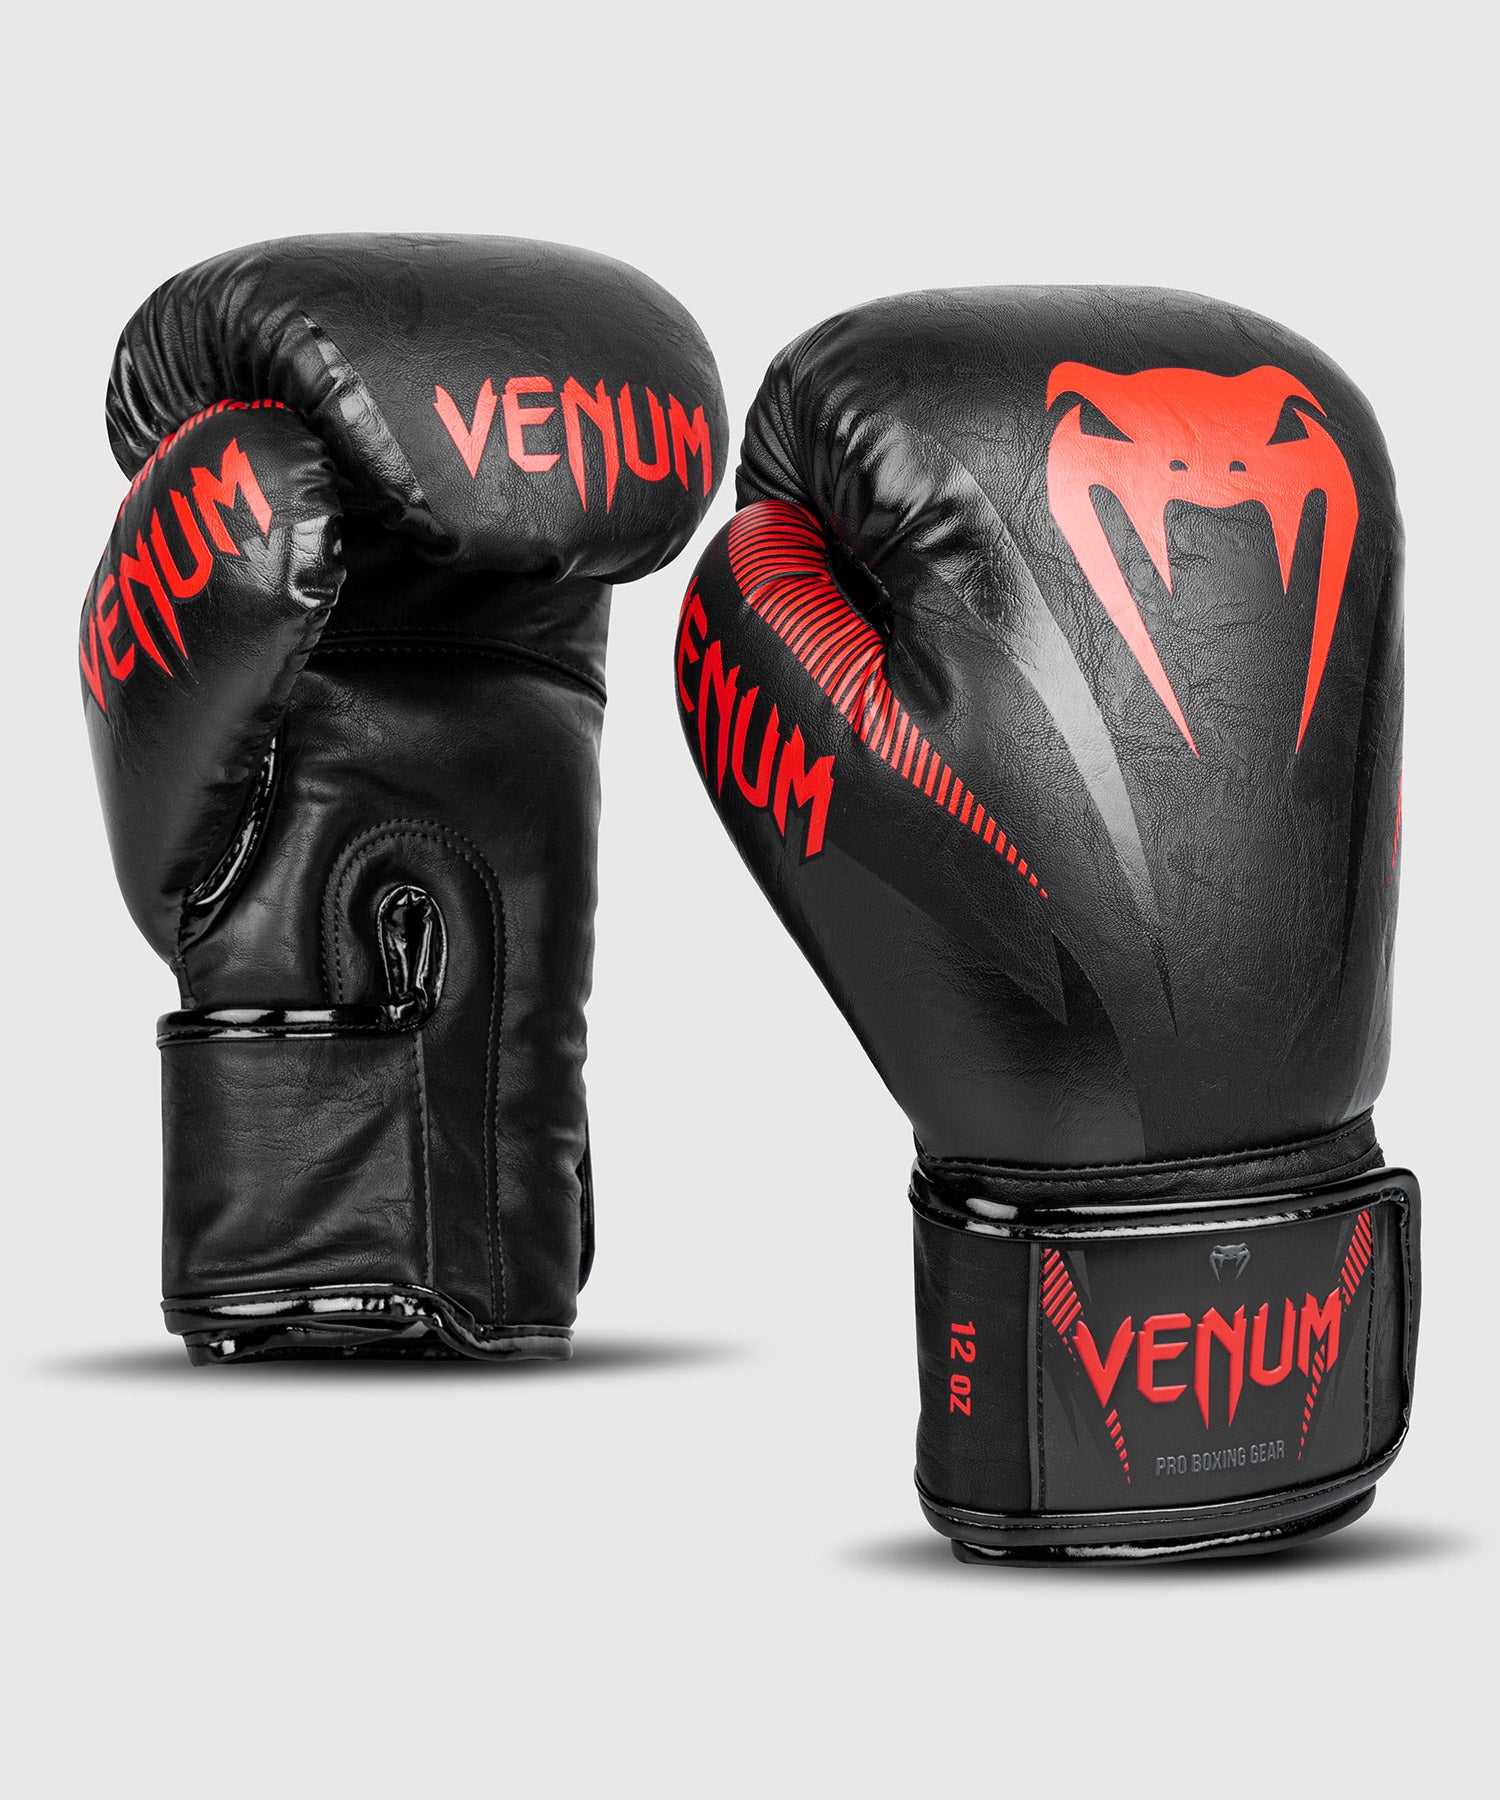 Venum Impact ボクシンググローブ - ブラック/レッド